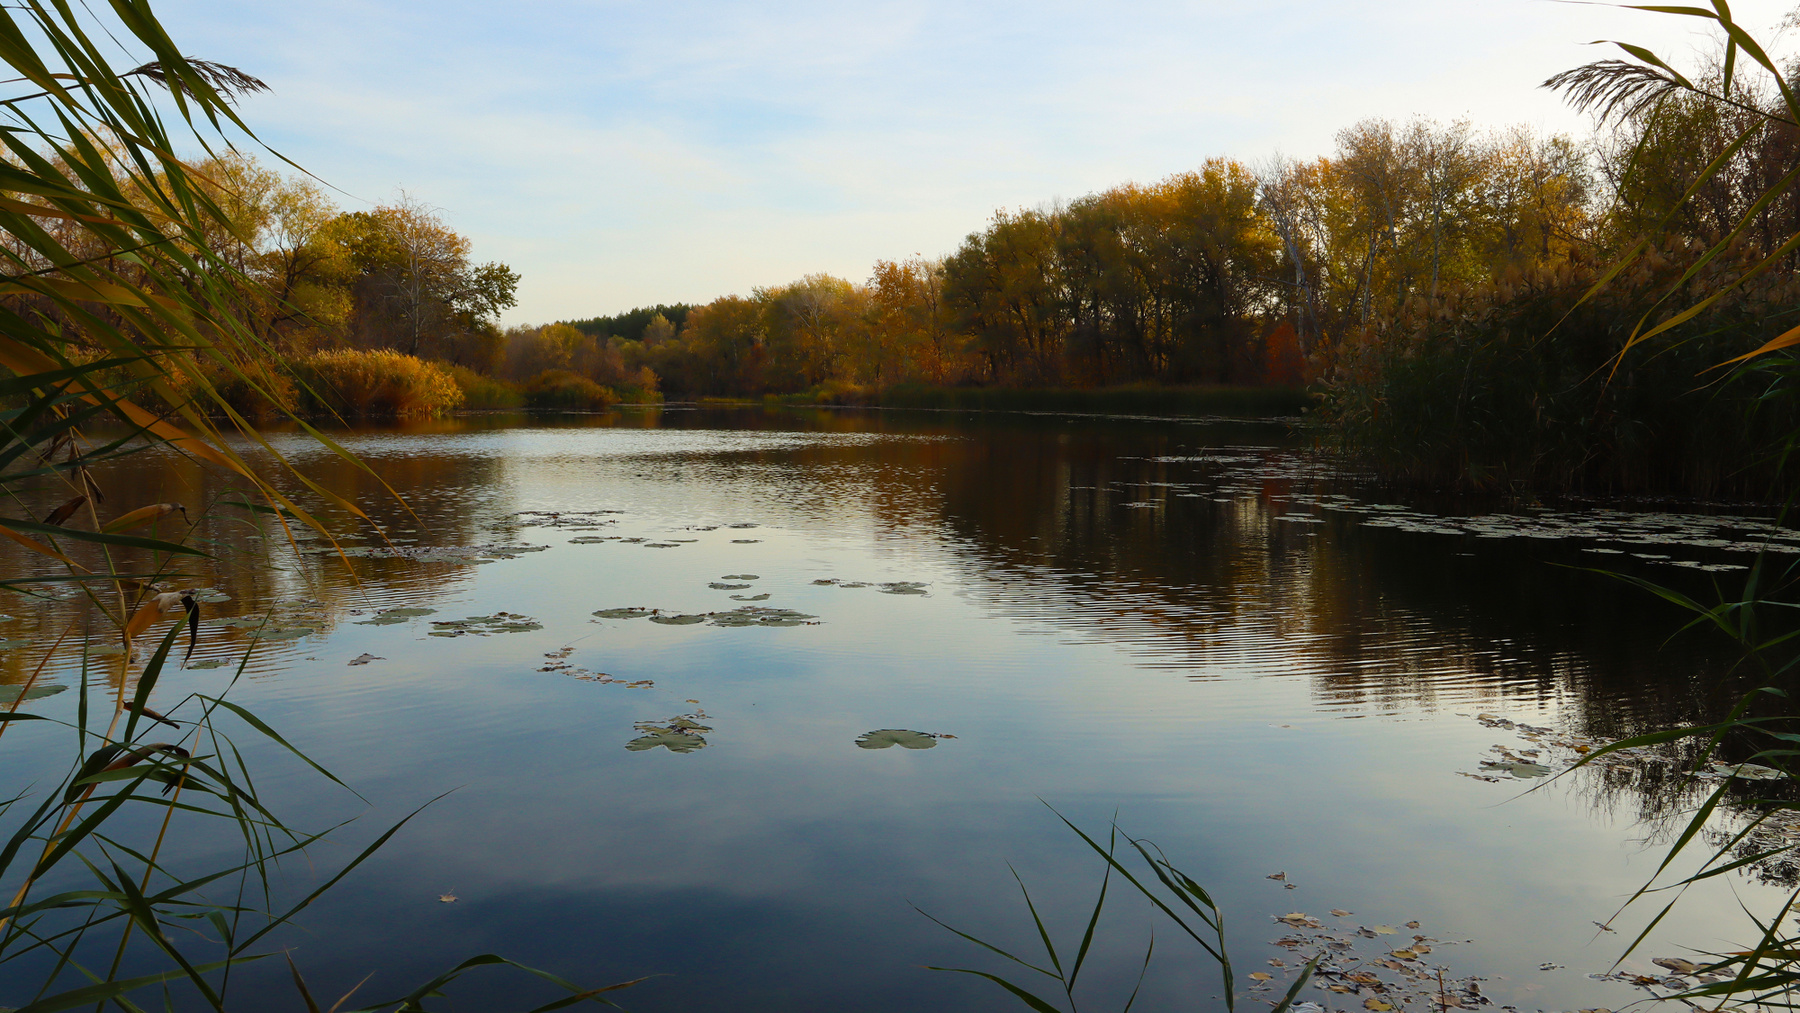 Утро на речке Река Бузулук речка у реки рассвет на реке рыбалка кувшинки водная гладь природа